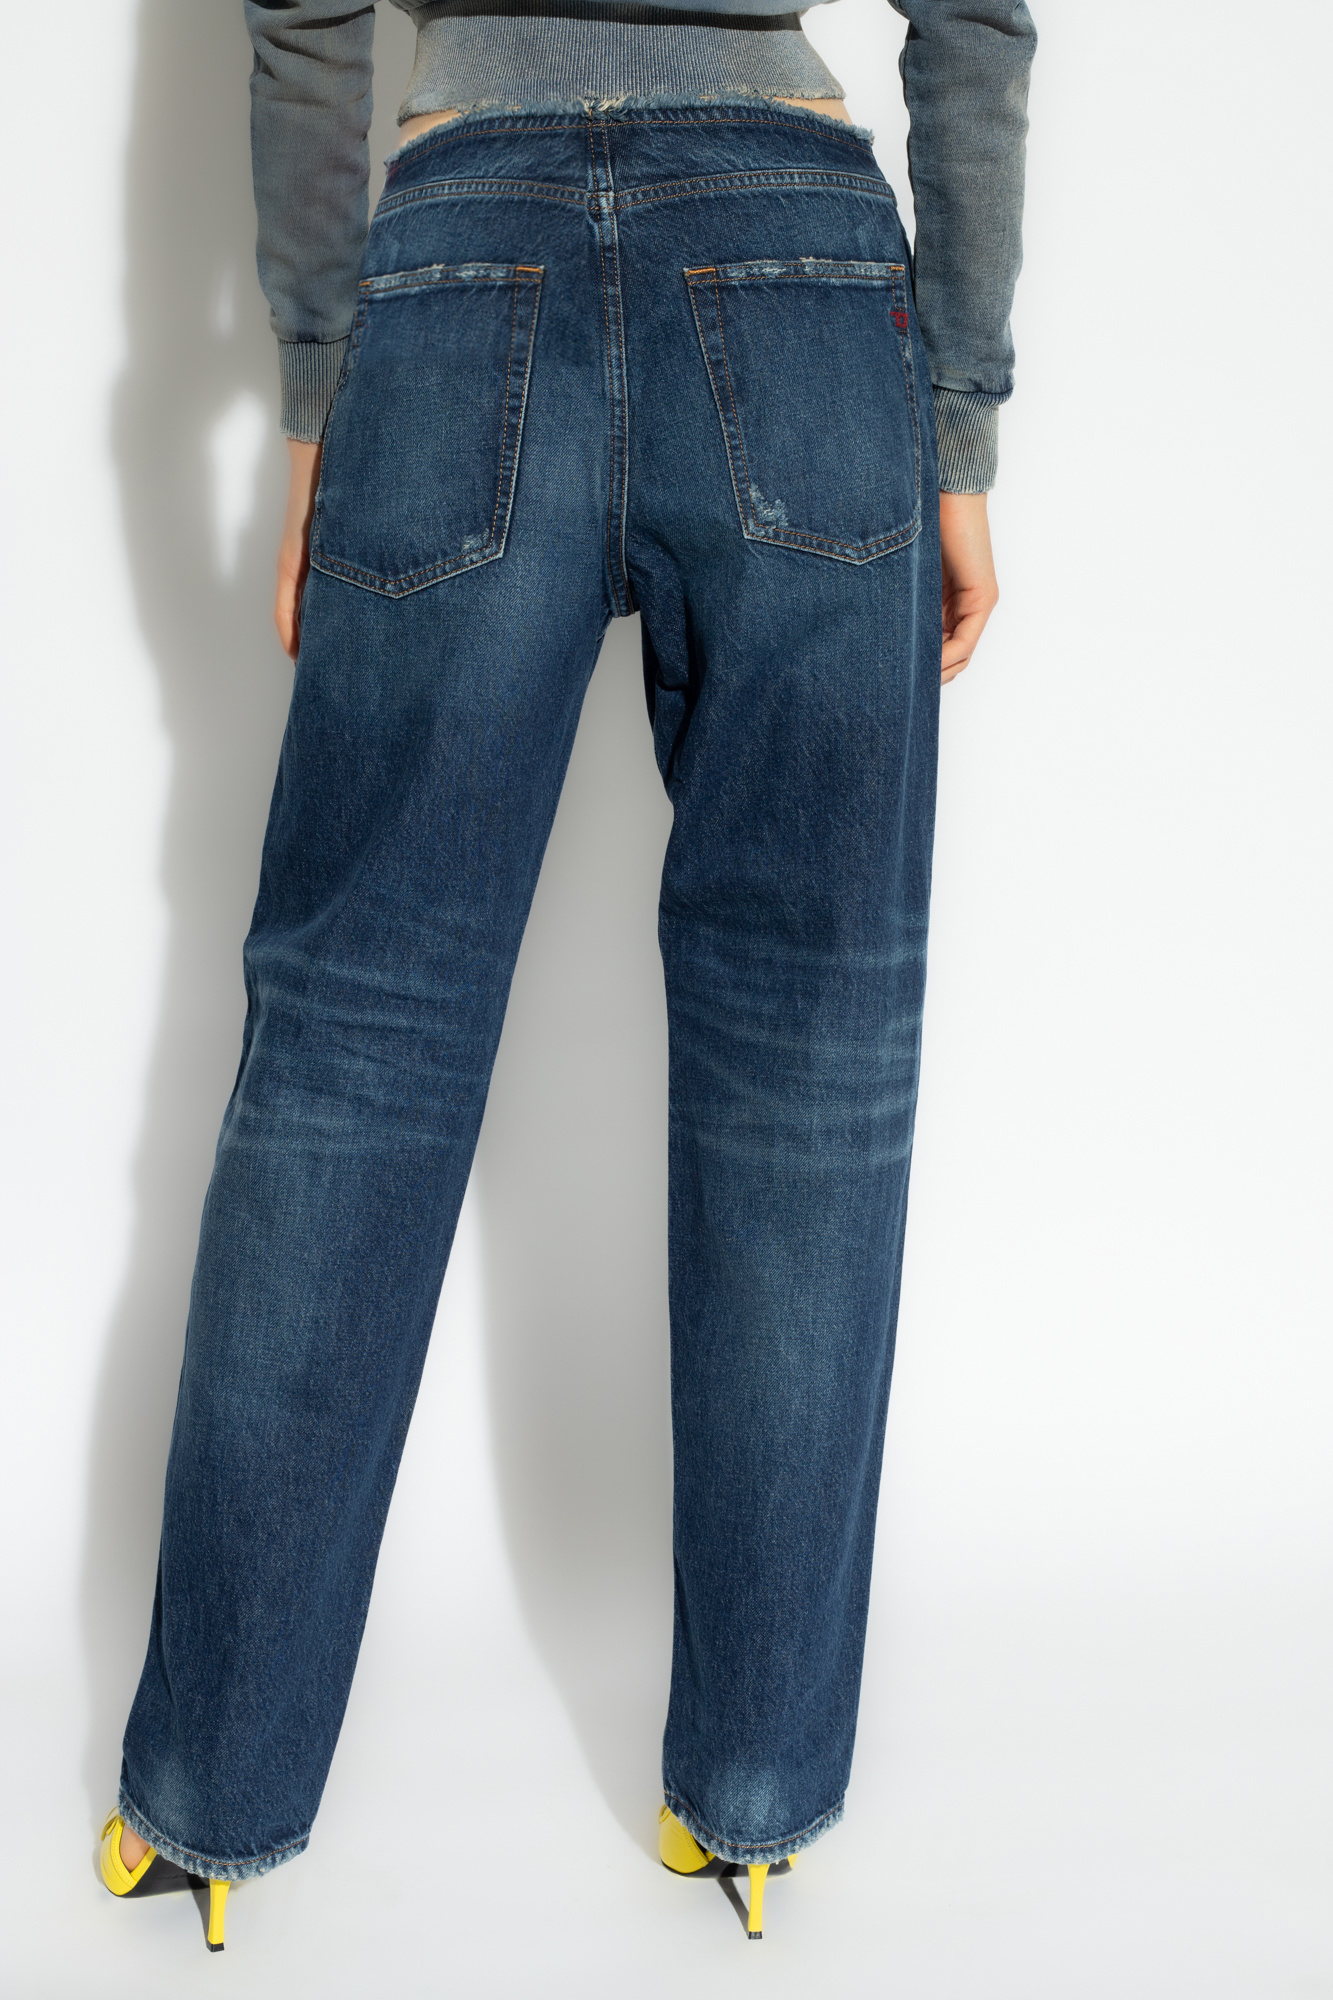 Shorts - ARK Men\'s Essentials IetpShops Egypt jeans \'D - Diesel Nike Blue - S2\' Sportswear -